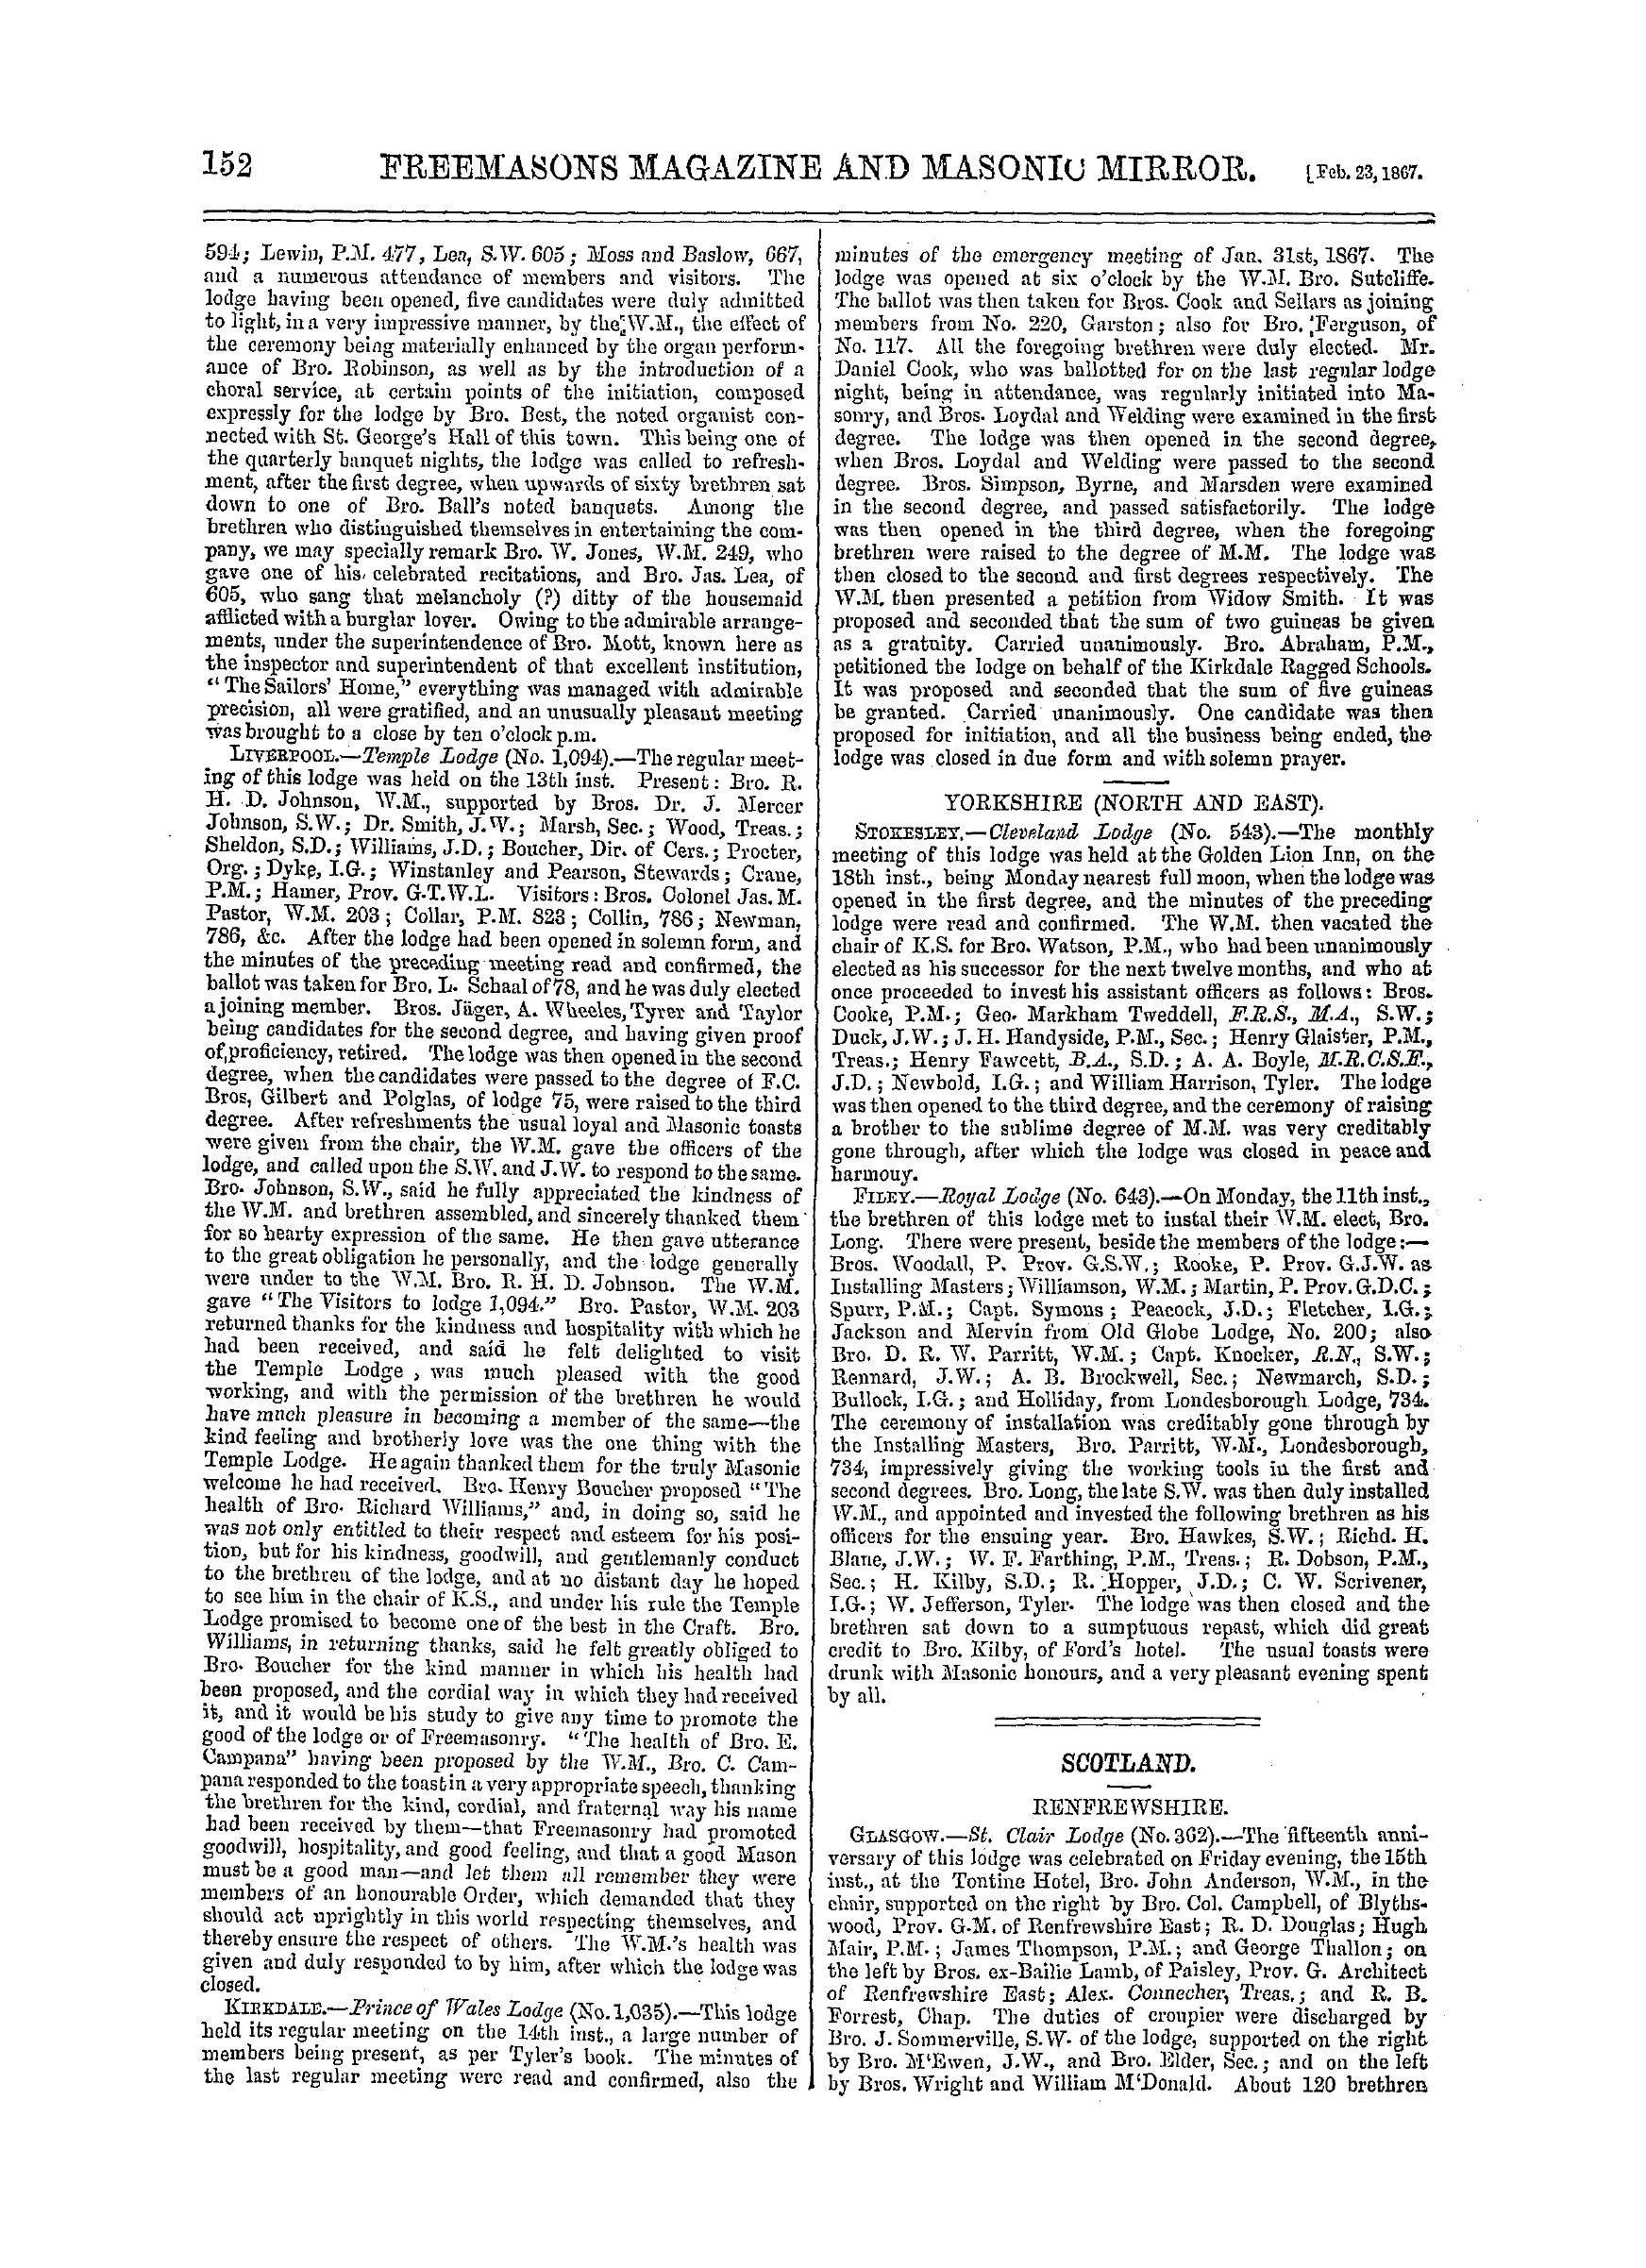 The Freemasons' Monthly Magazine: 1867-02-23: 12